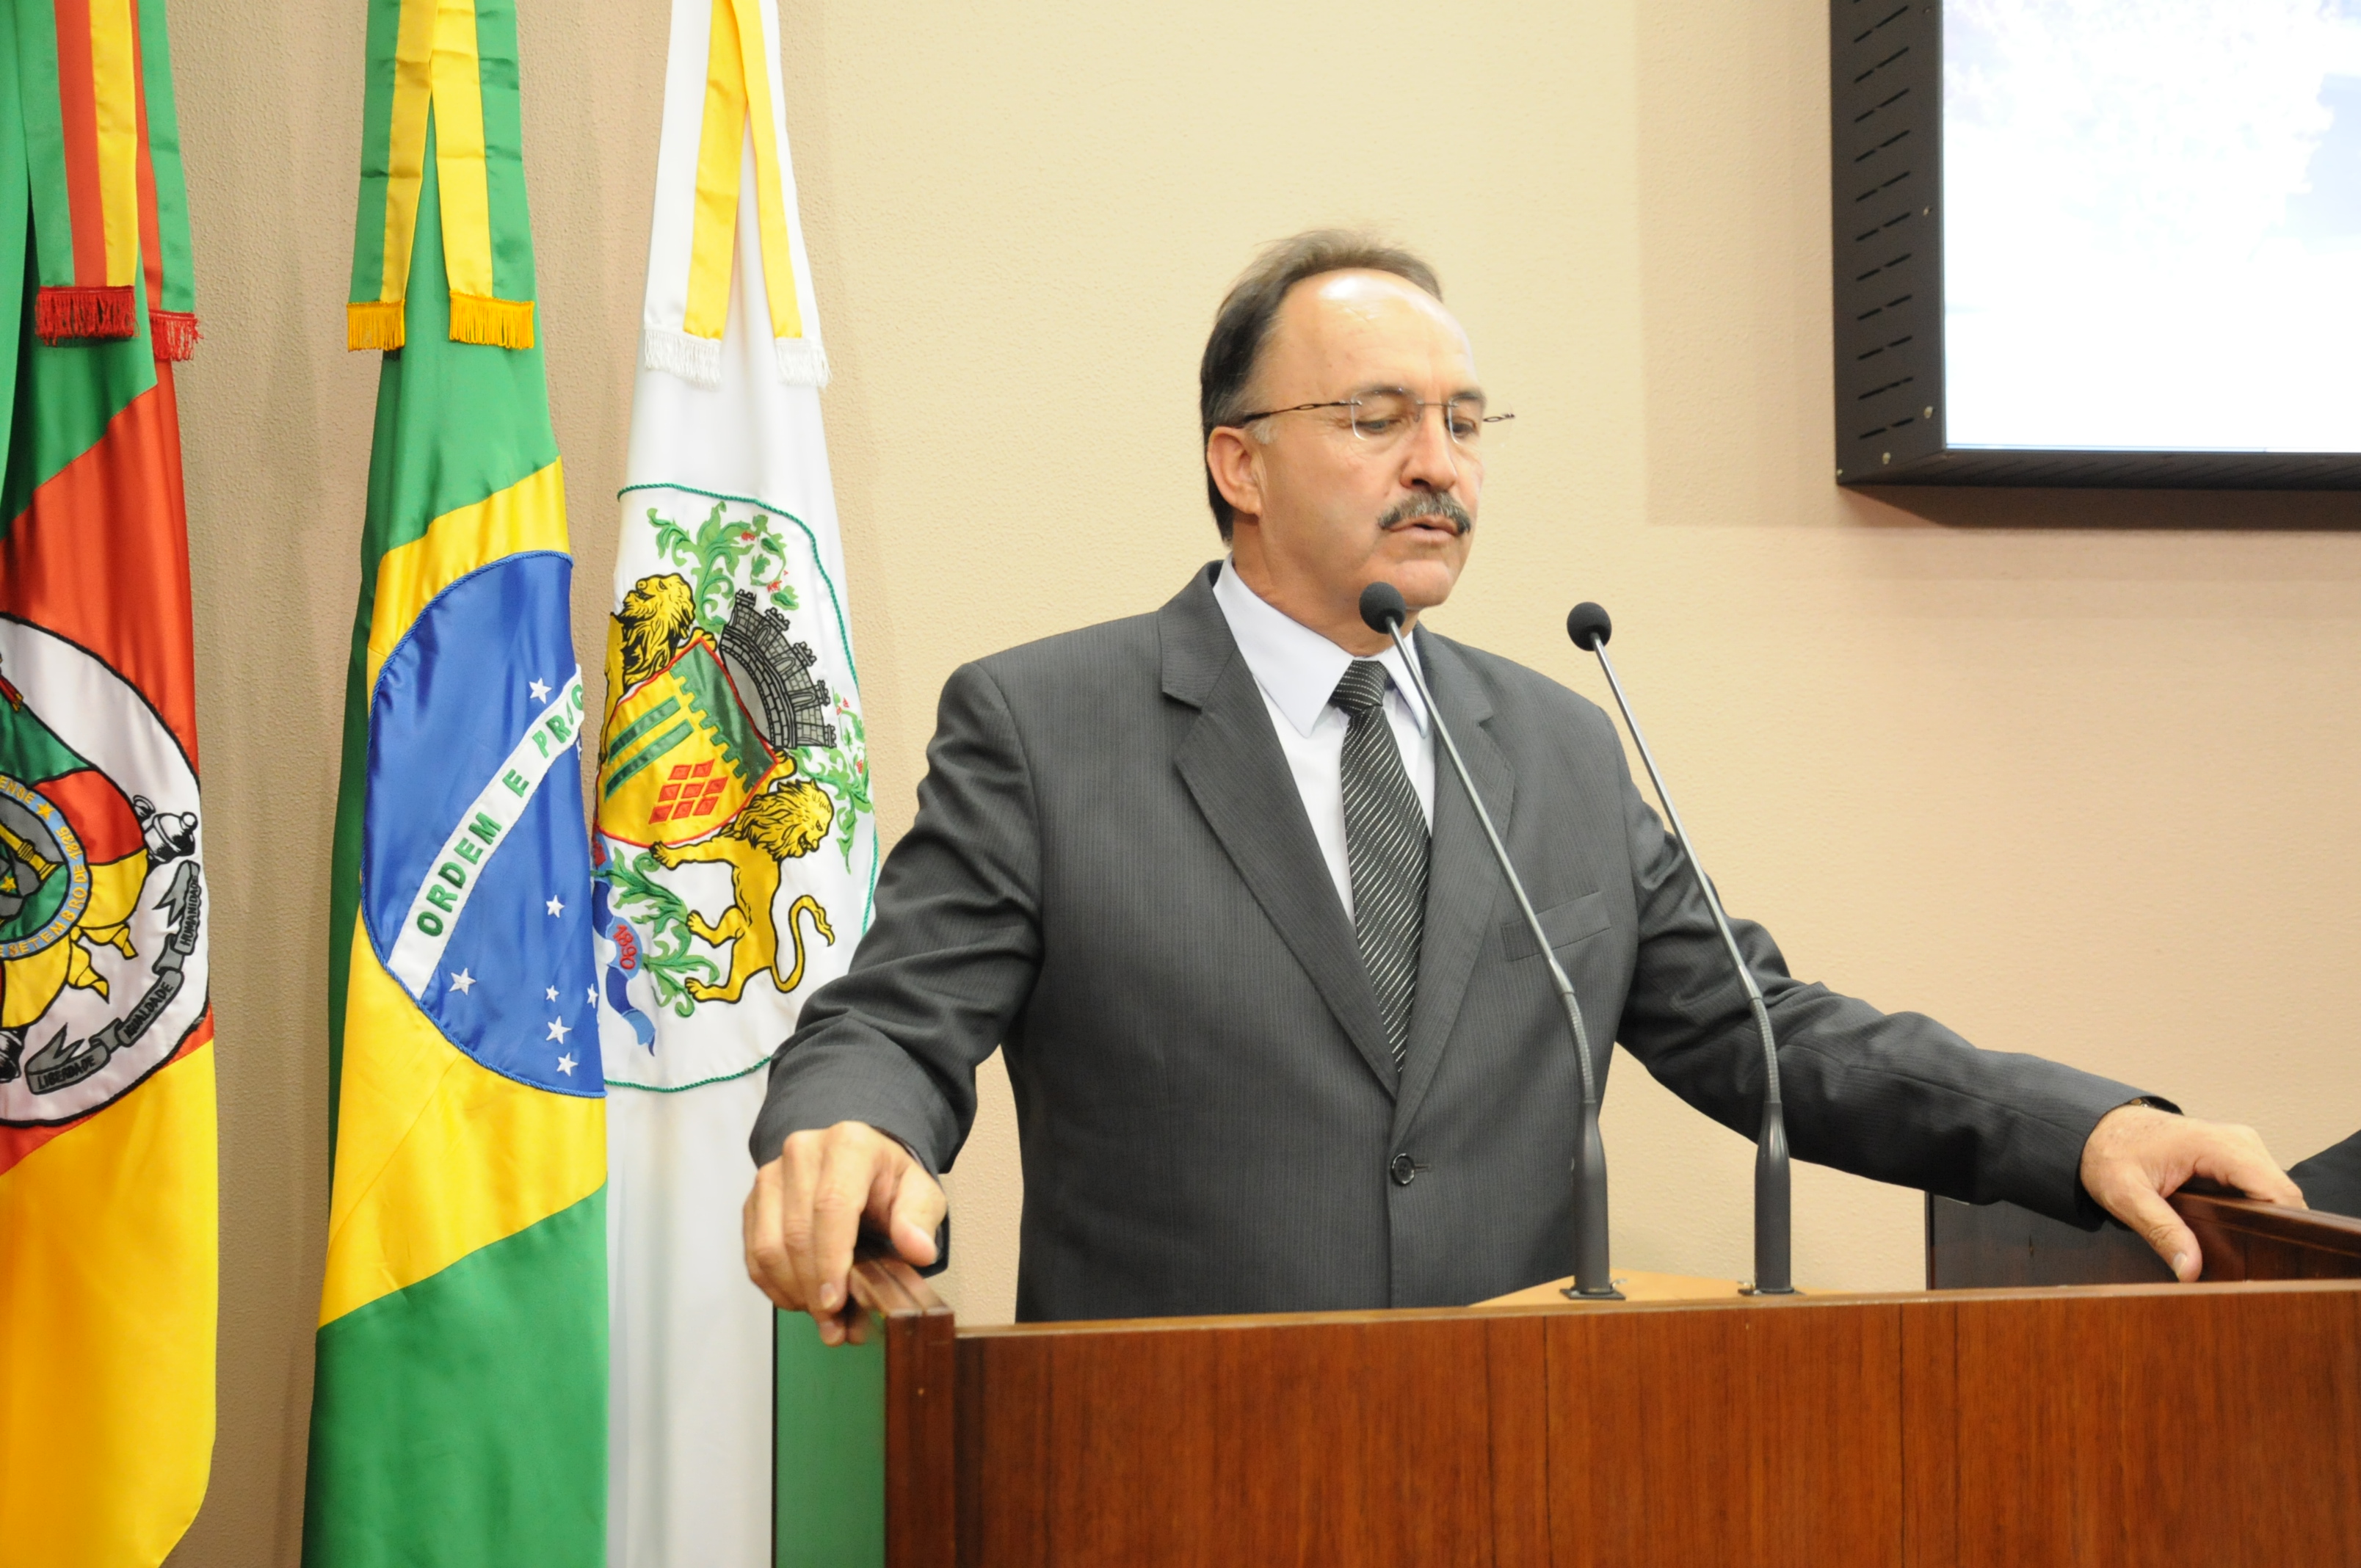 Vereador Mauro Pereira participará de formatura de soldados da região de Caxias do Sul